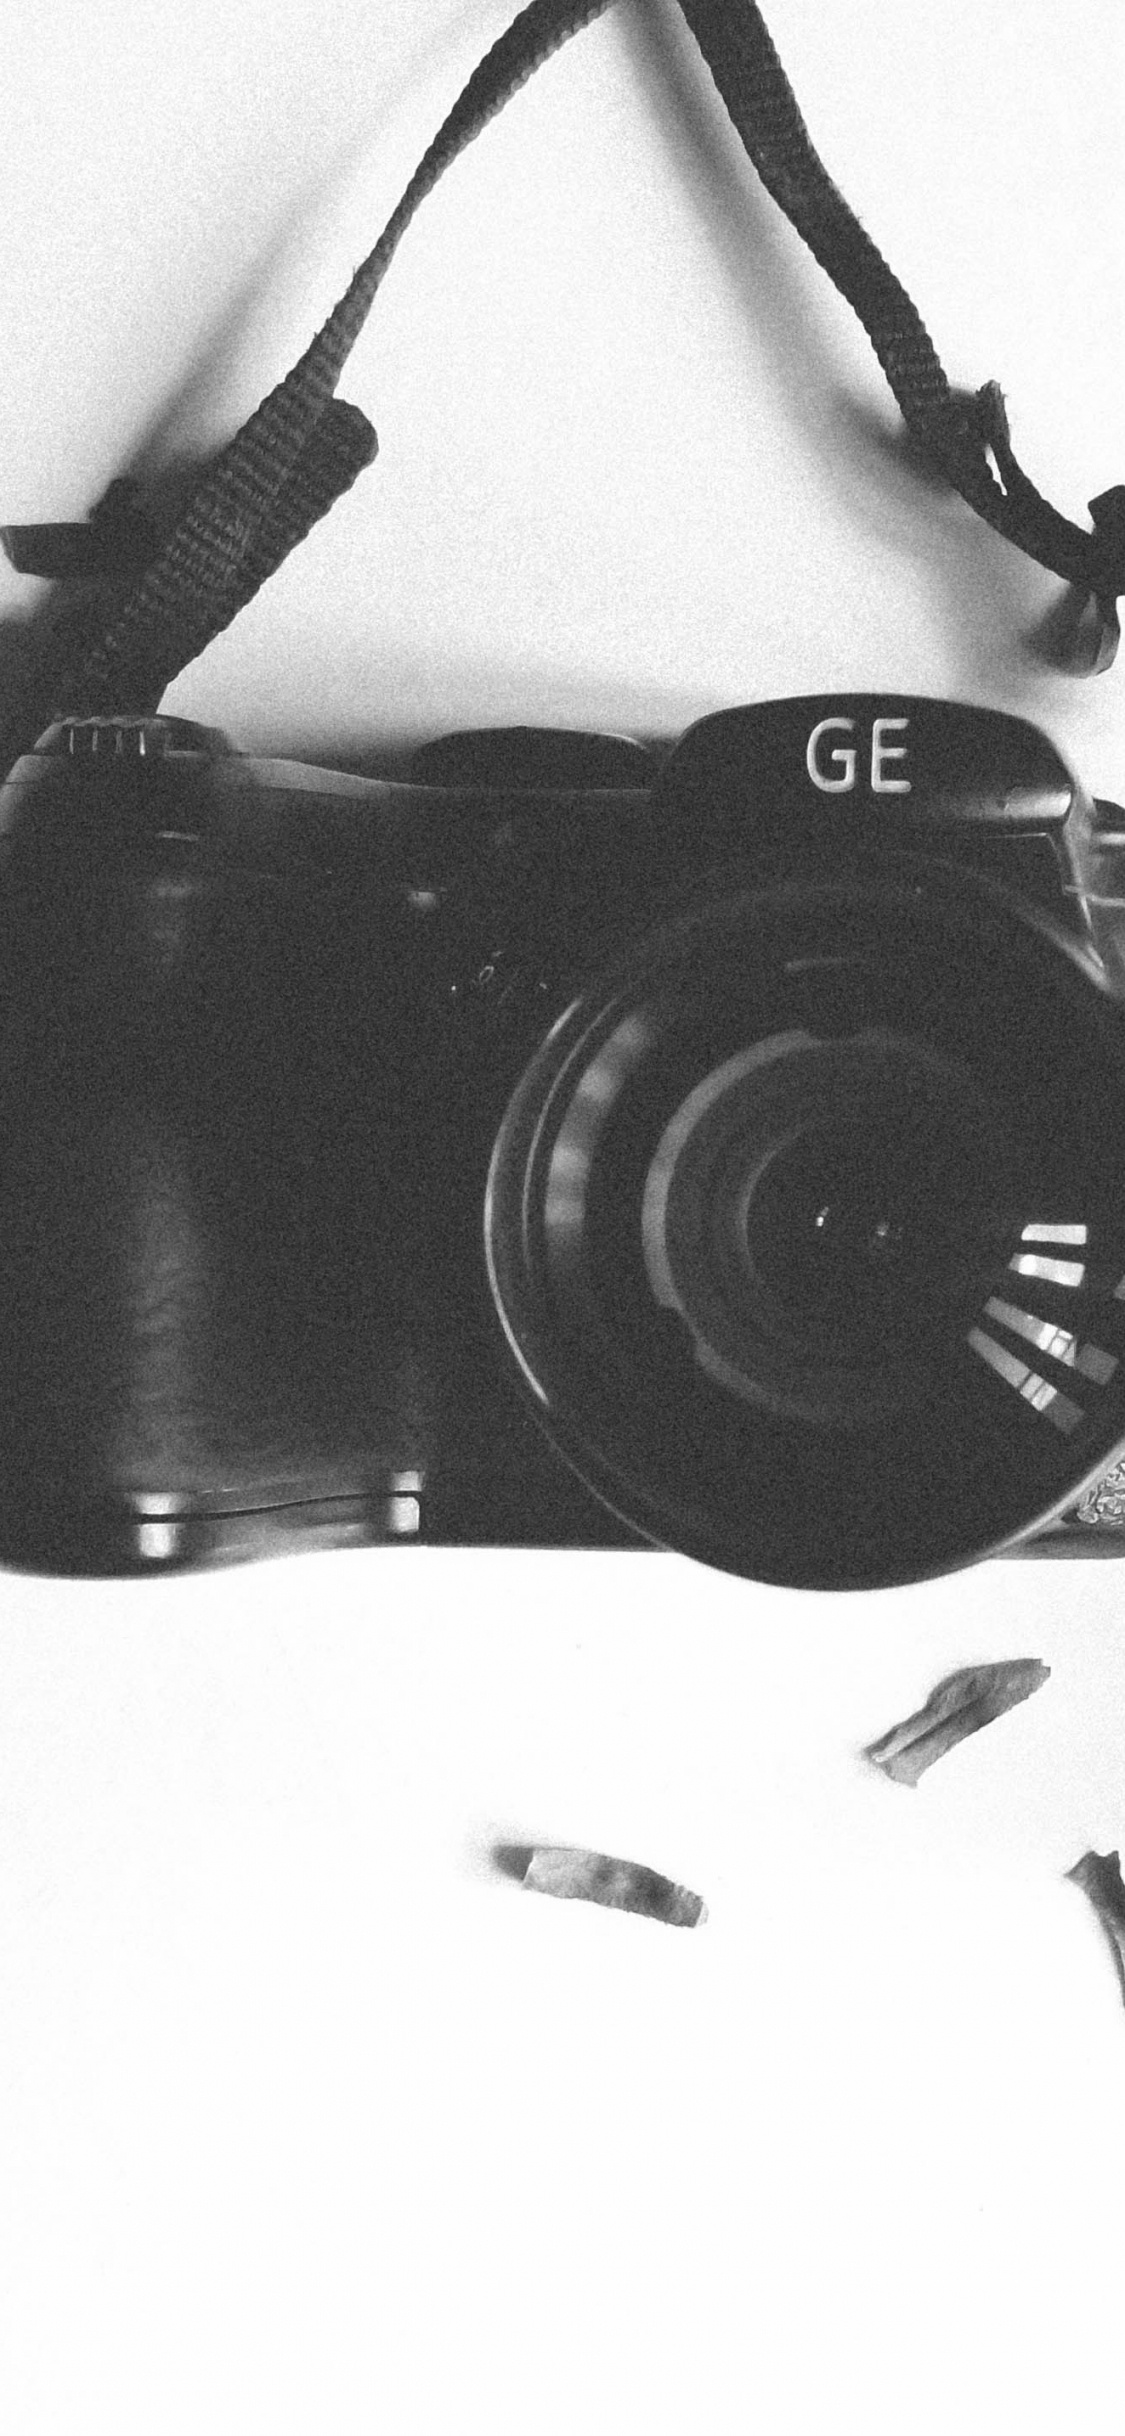 Schwarze Nikon Dslr Kamera Auf Weißem Textil. Wallpaper in 1125x2436 Resolution